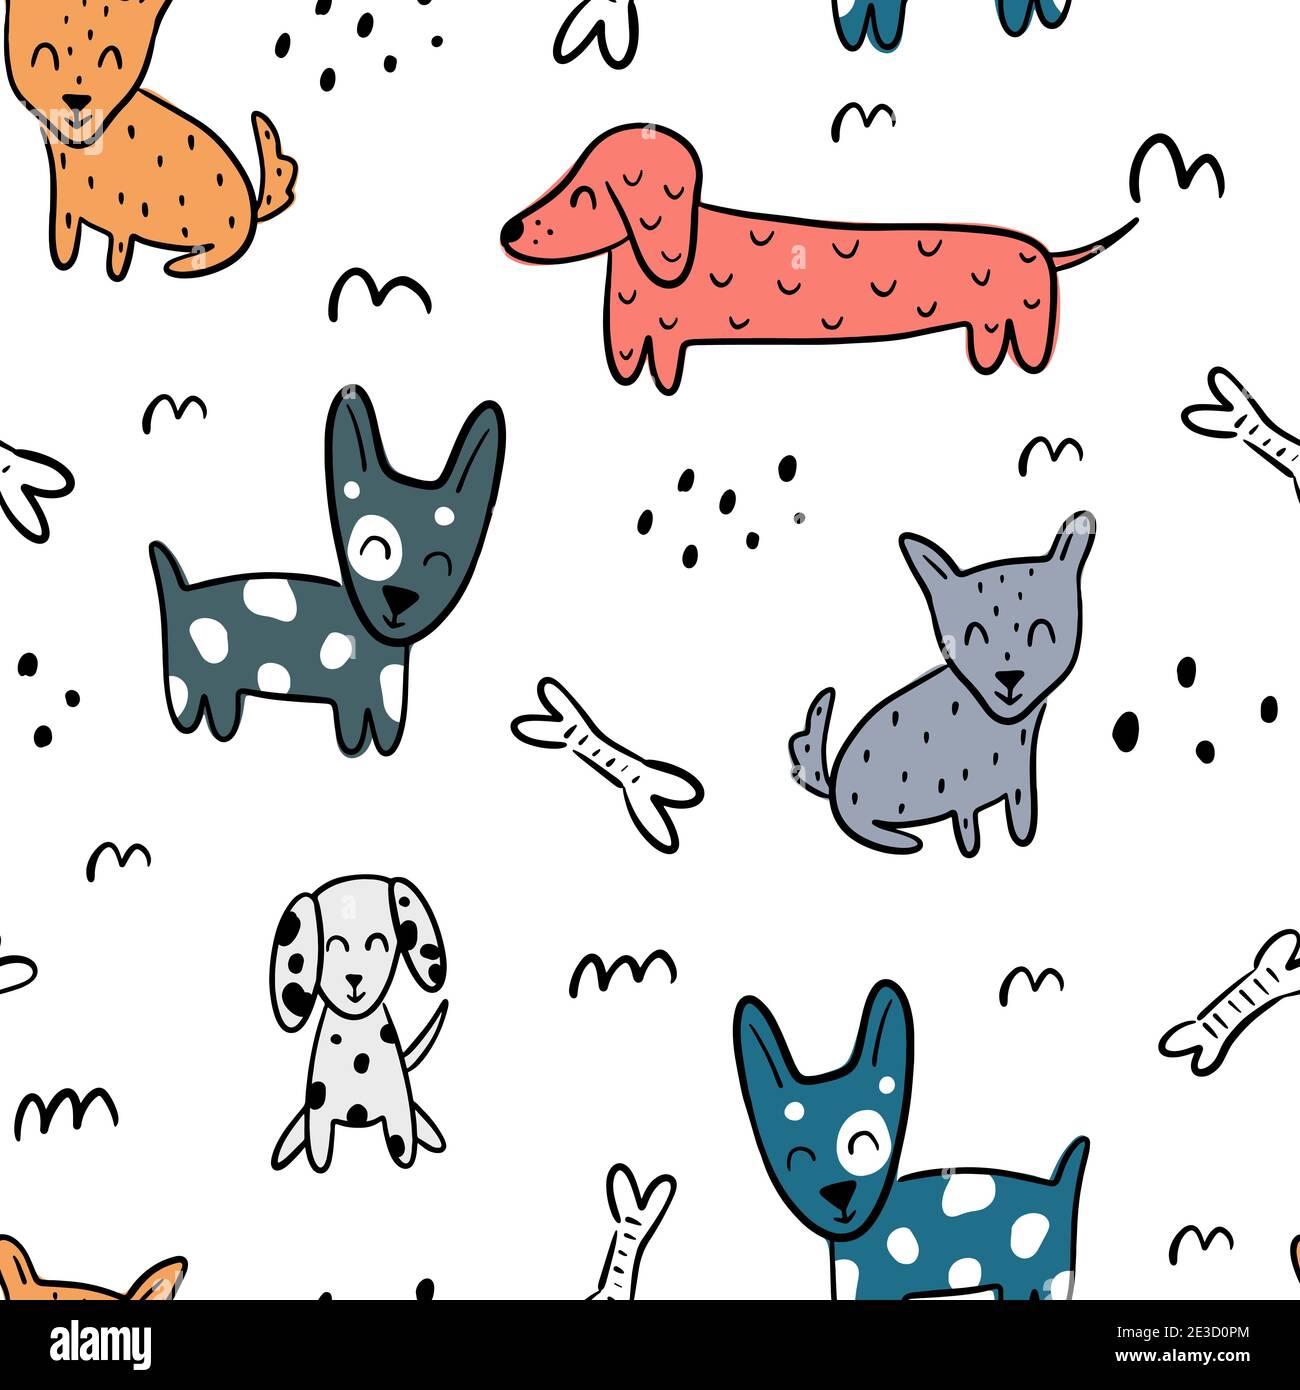 Niedliche kindliche nahtlose Muster mit verschiedenen Hunden, Knochen und abstrakte Elemente auf weißem Hintergrund isoliert. Handgezeichnete Kritzeleien im skandinavischen Stil Stock Vektor